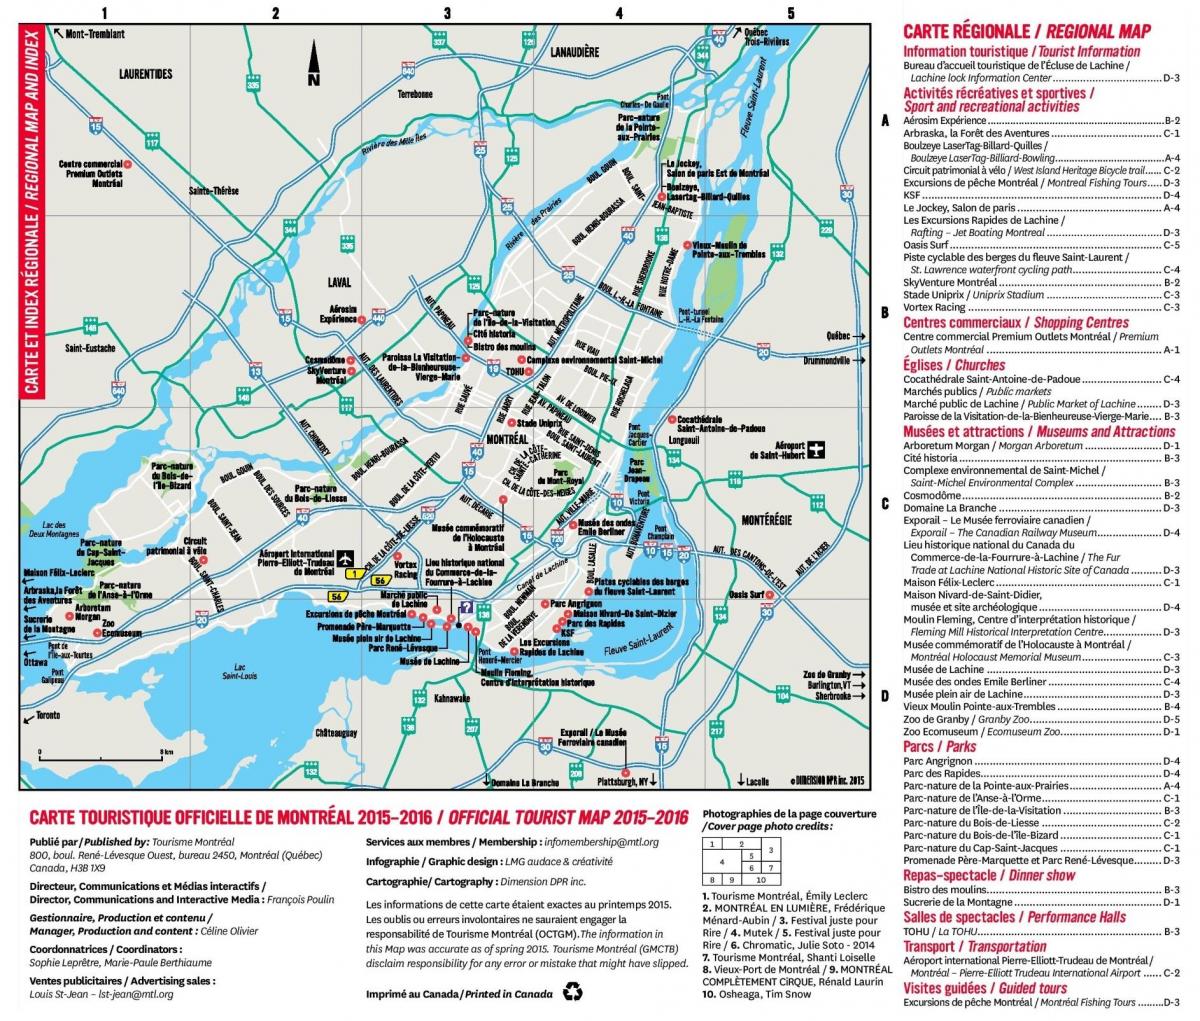 Plan des routes de Montreal